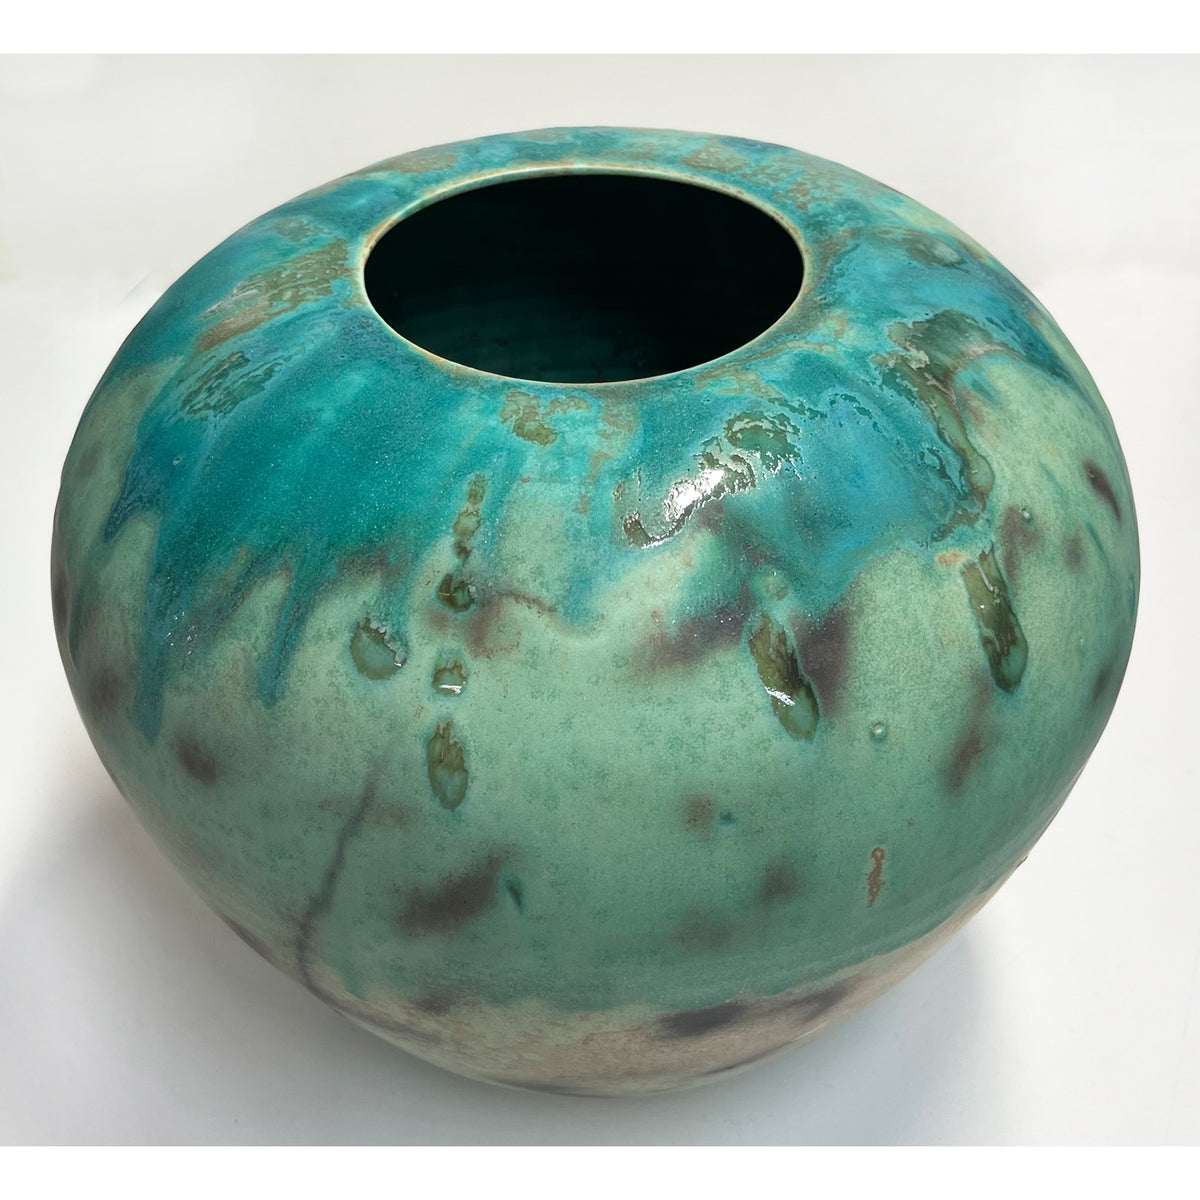 Kayo O'Young - Medium Green Vase, 8.5" x 9" x 9"